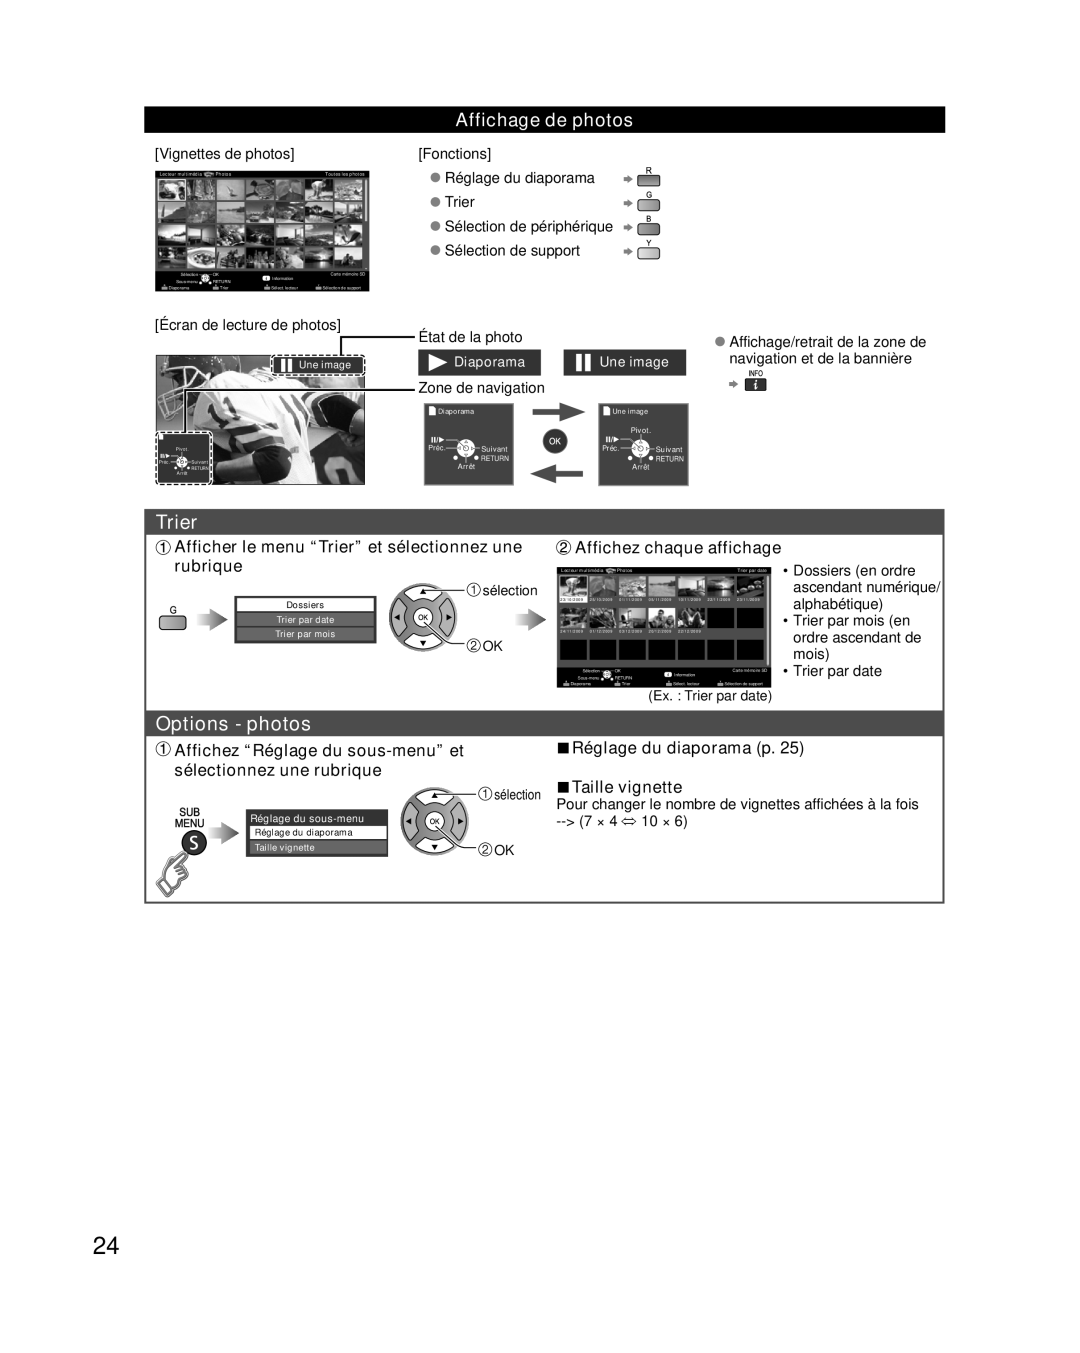 Panasonic TC-L32E3 Options - photos, Affichage de photos, Afficher le menu “Trier” et sélectionnez une, rubrique, Préc 